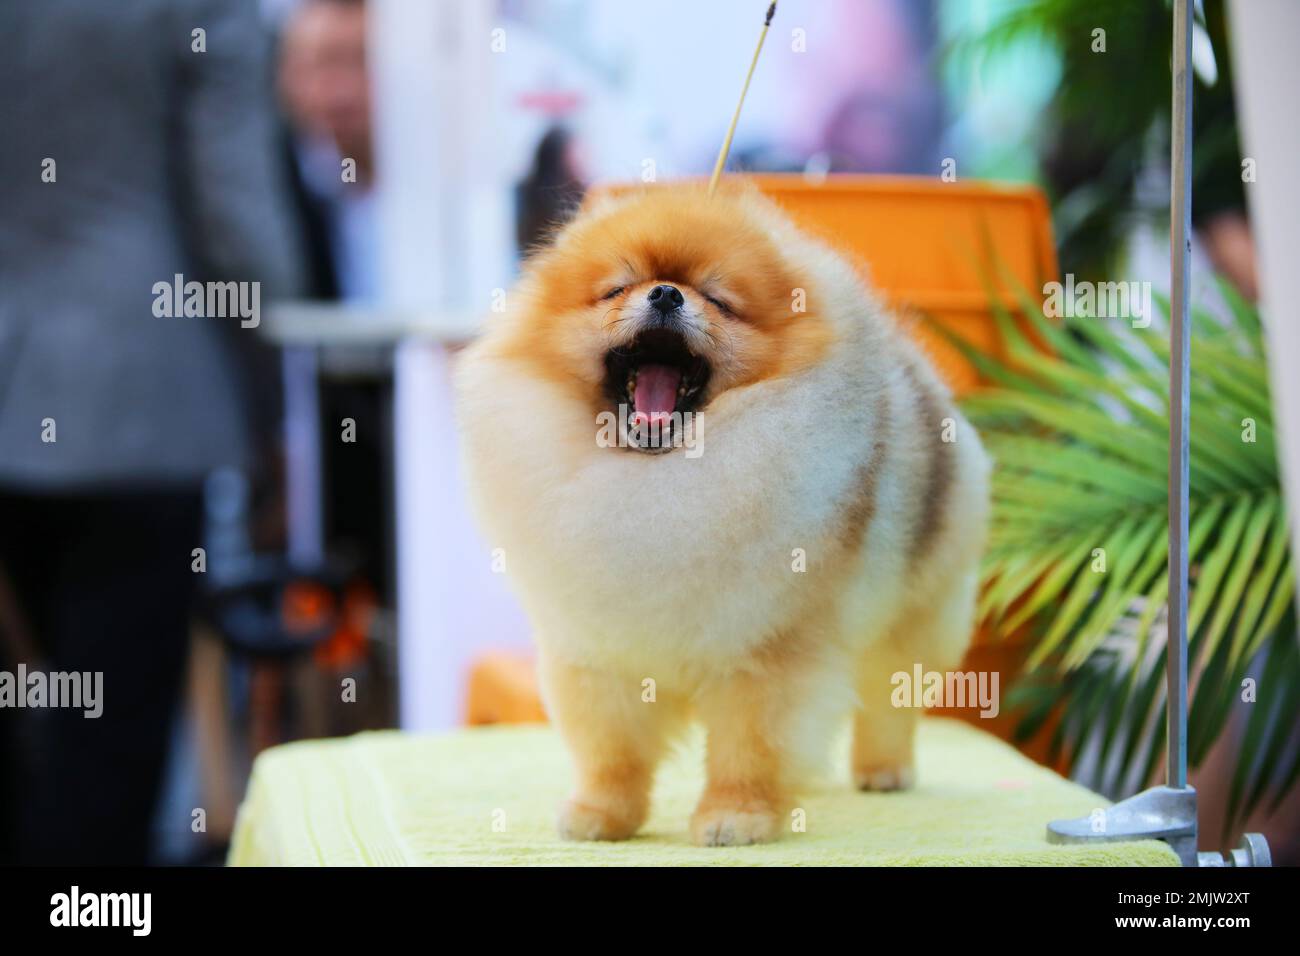 Pomeranion yawning on grooming table at the dog show. Fluffy dog yawning. Sleepy dog. Stock Photo